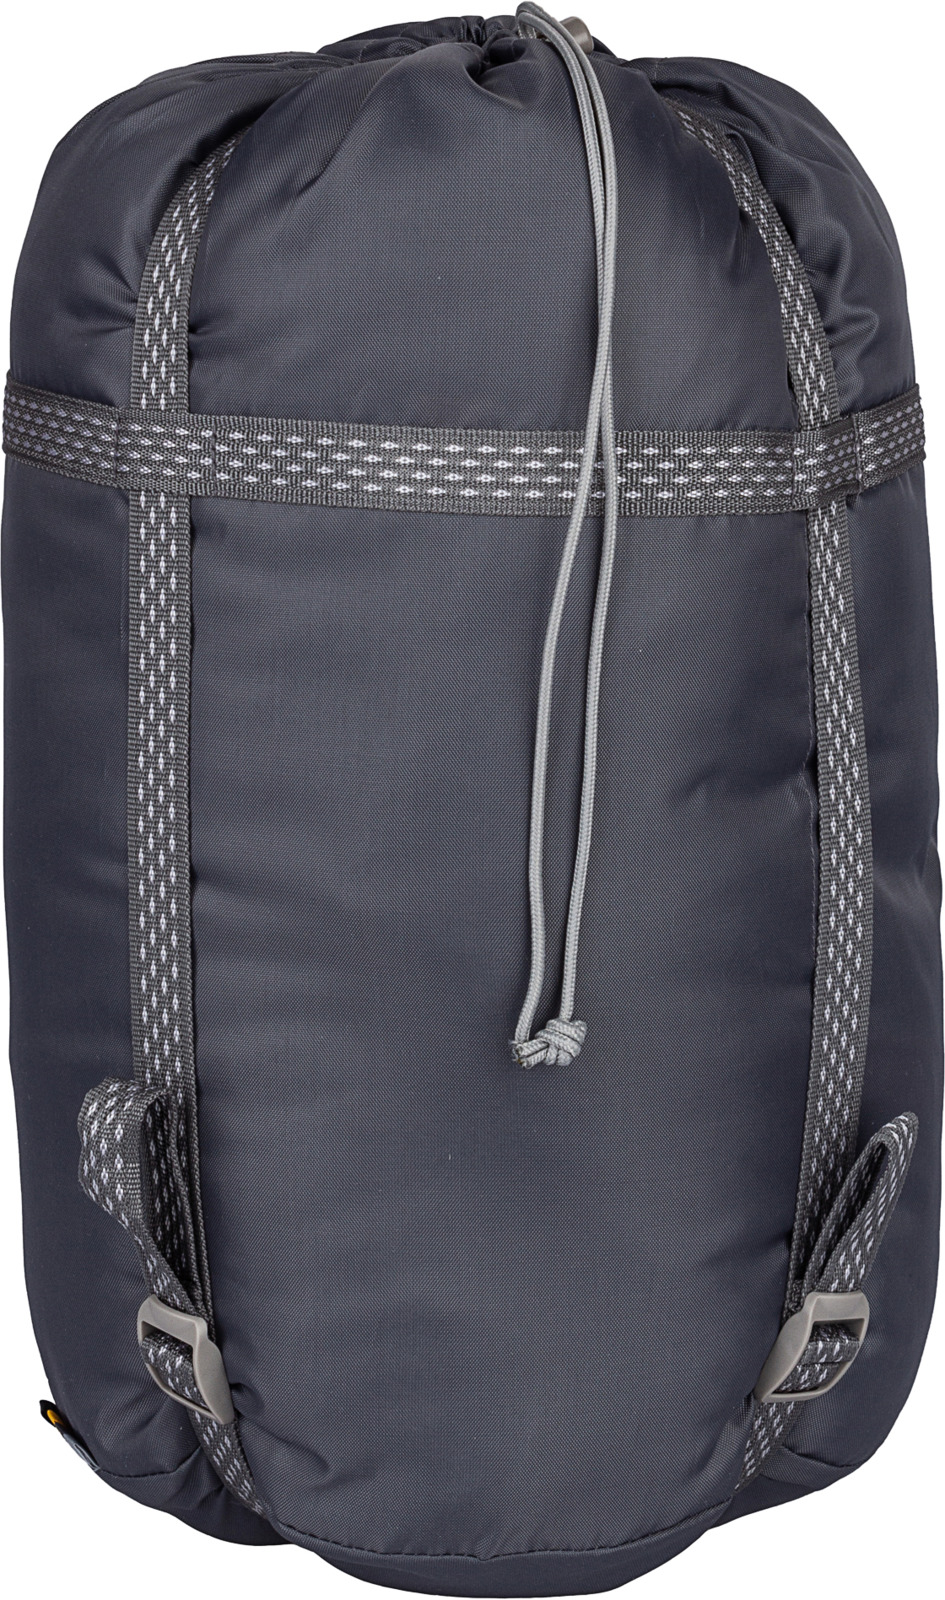 фото Спальный мешок Nova Tour Алтай -10 V3, правосторонняя молния, 96182, серый, размер XL (200 см)